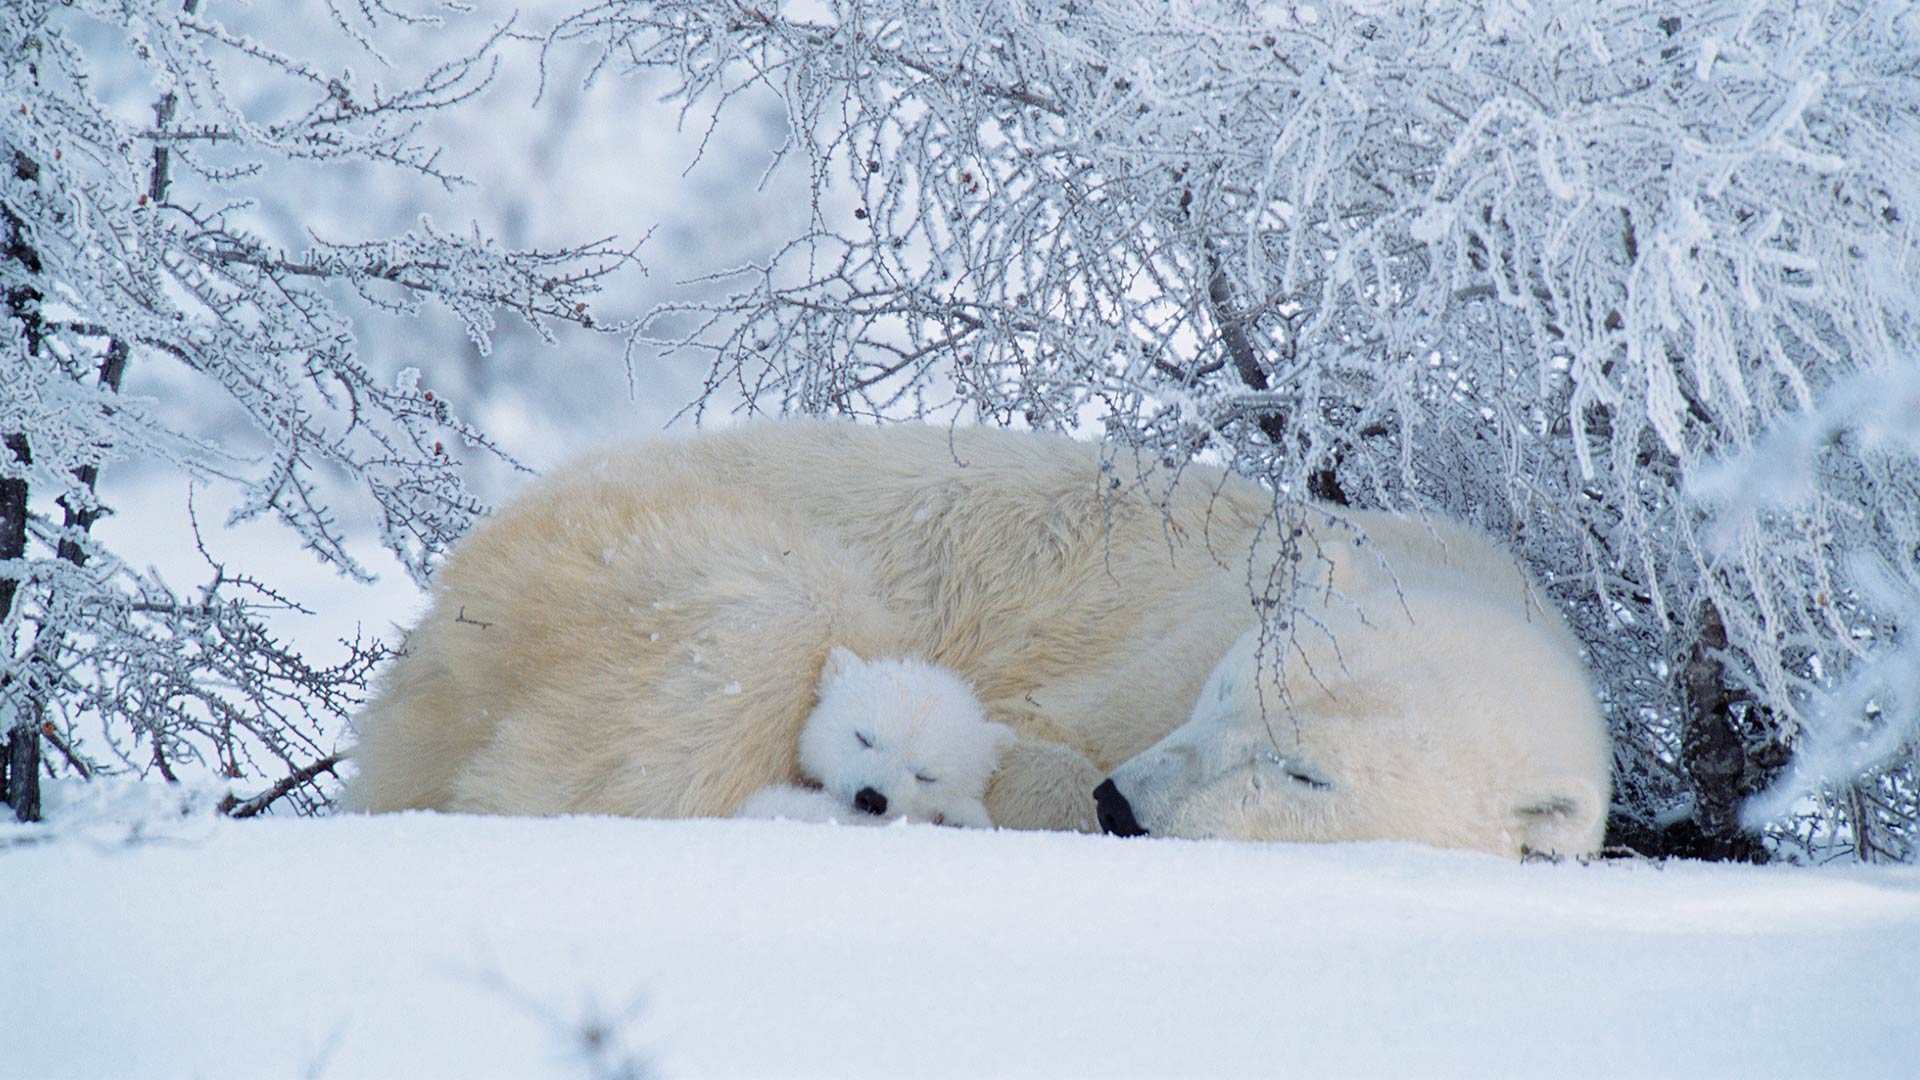 Bing image: International Polar Bear Day - Bing Wallpaper Gallery